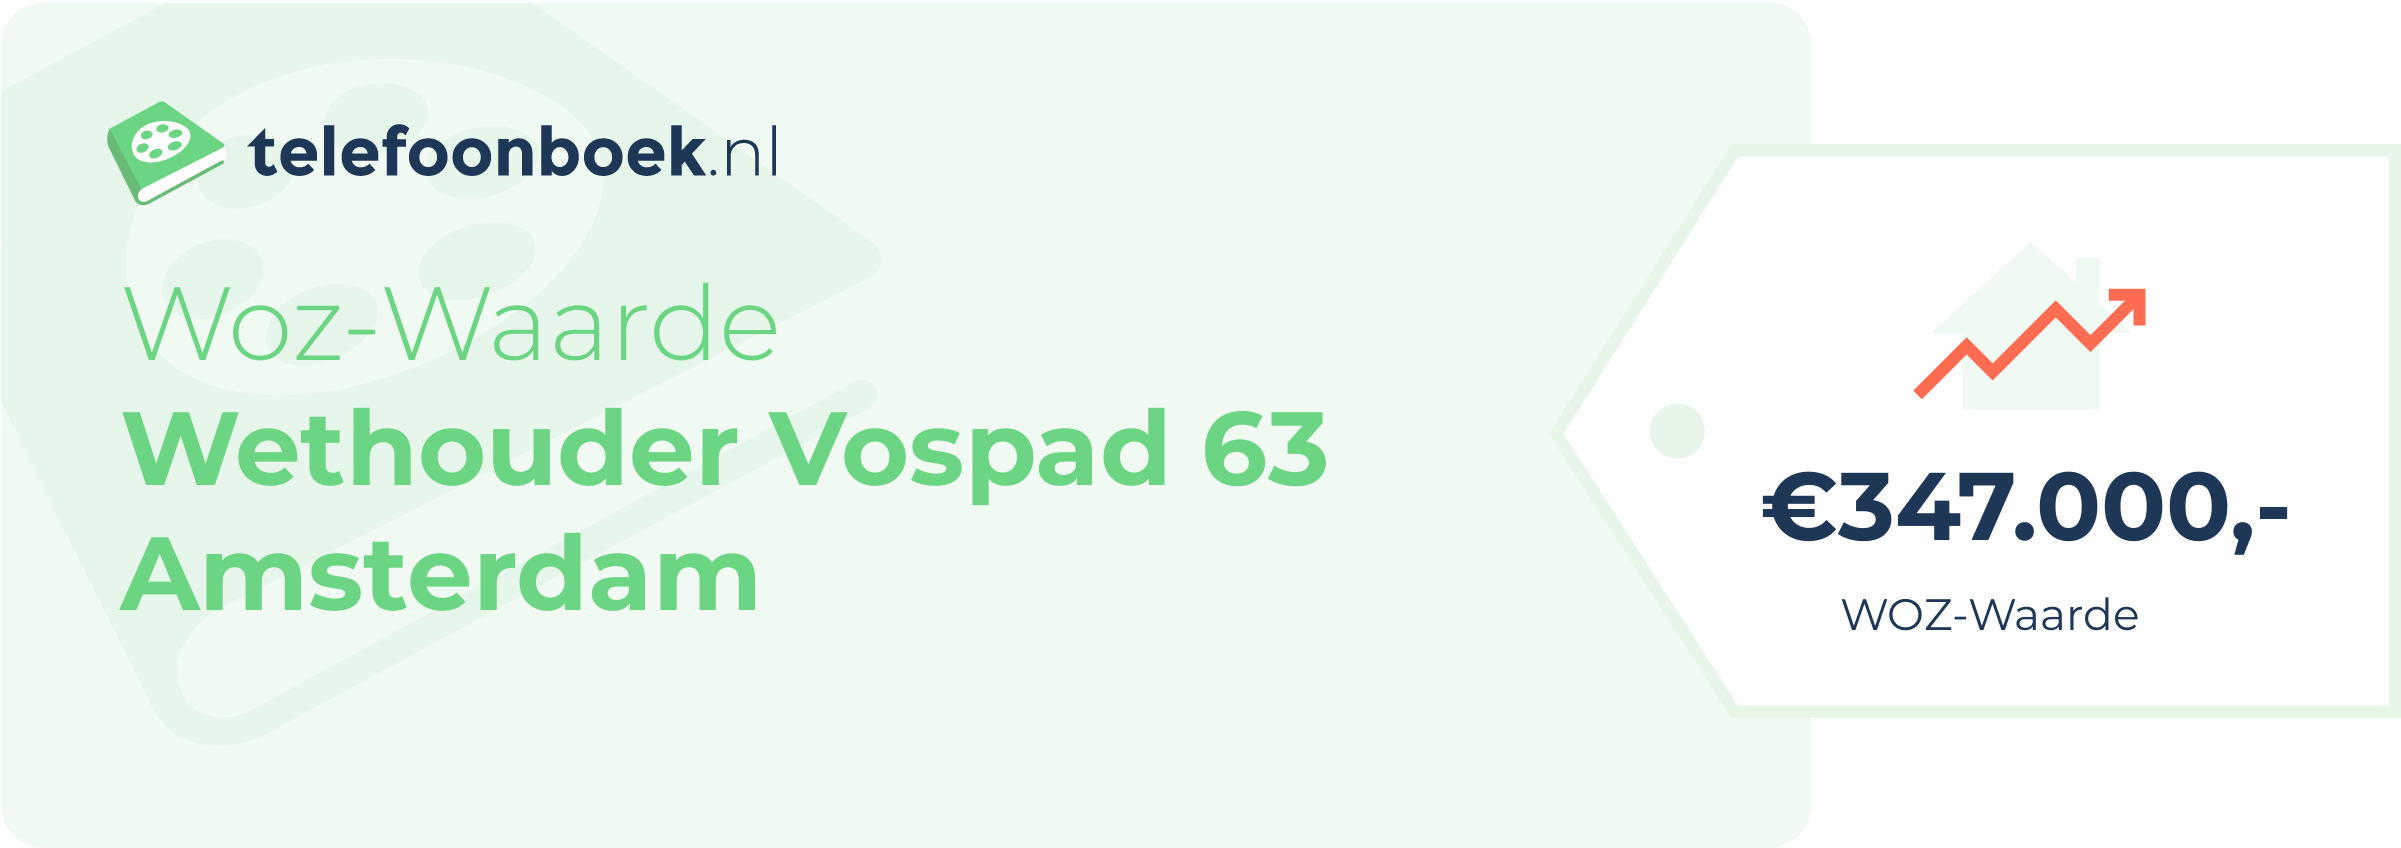 WOZ-waarde Wethouder Vospad 63 Amsterdam